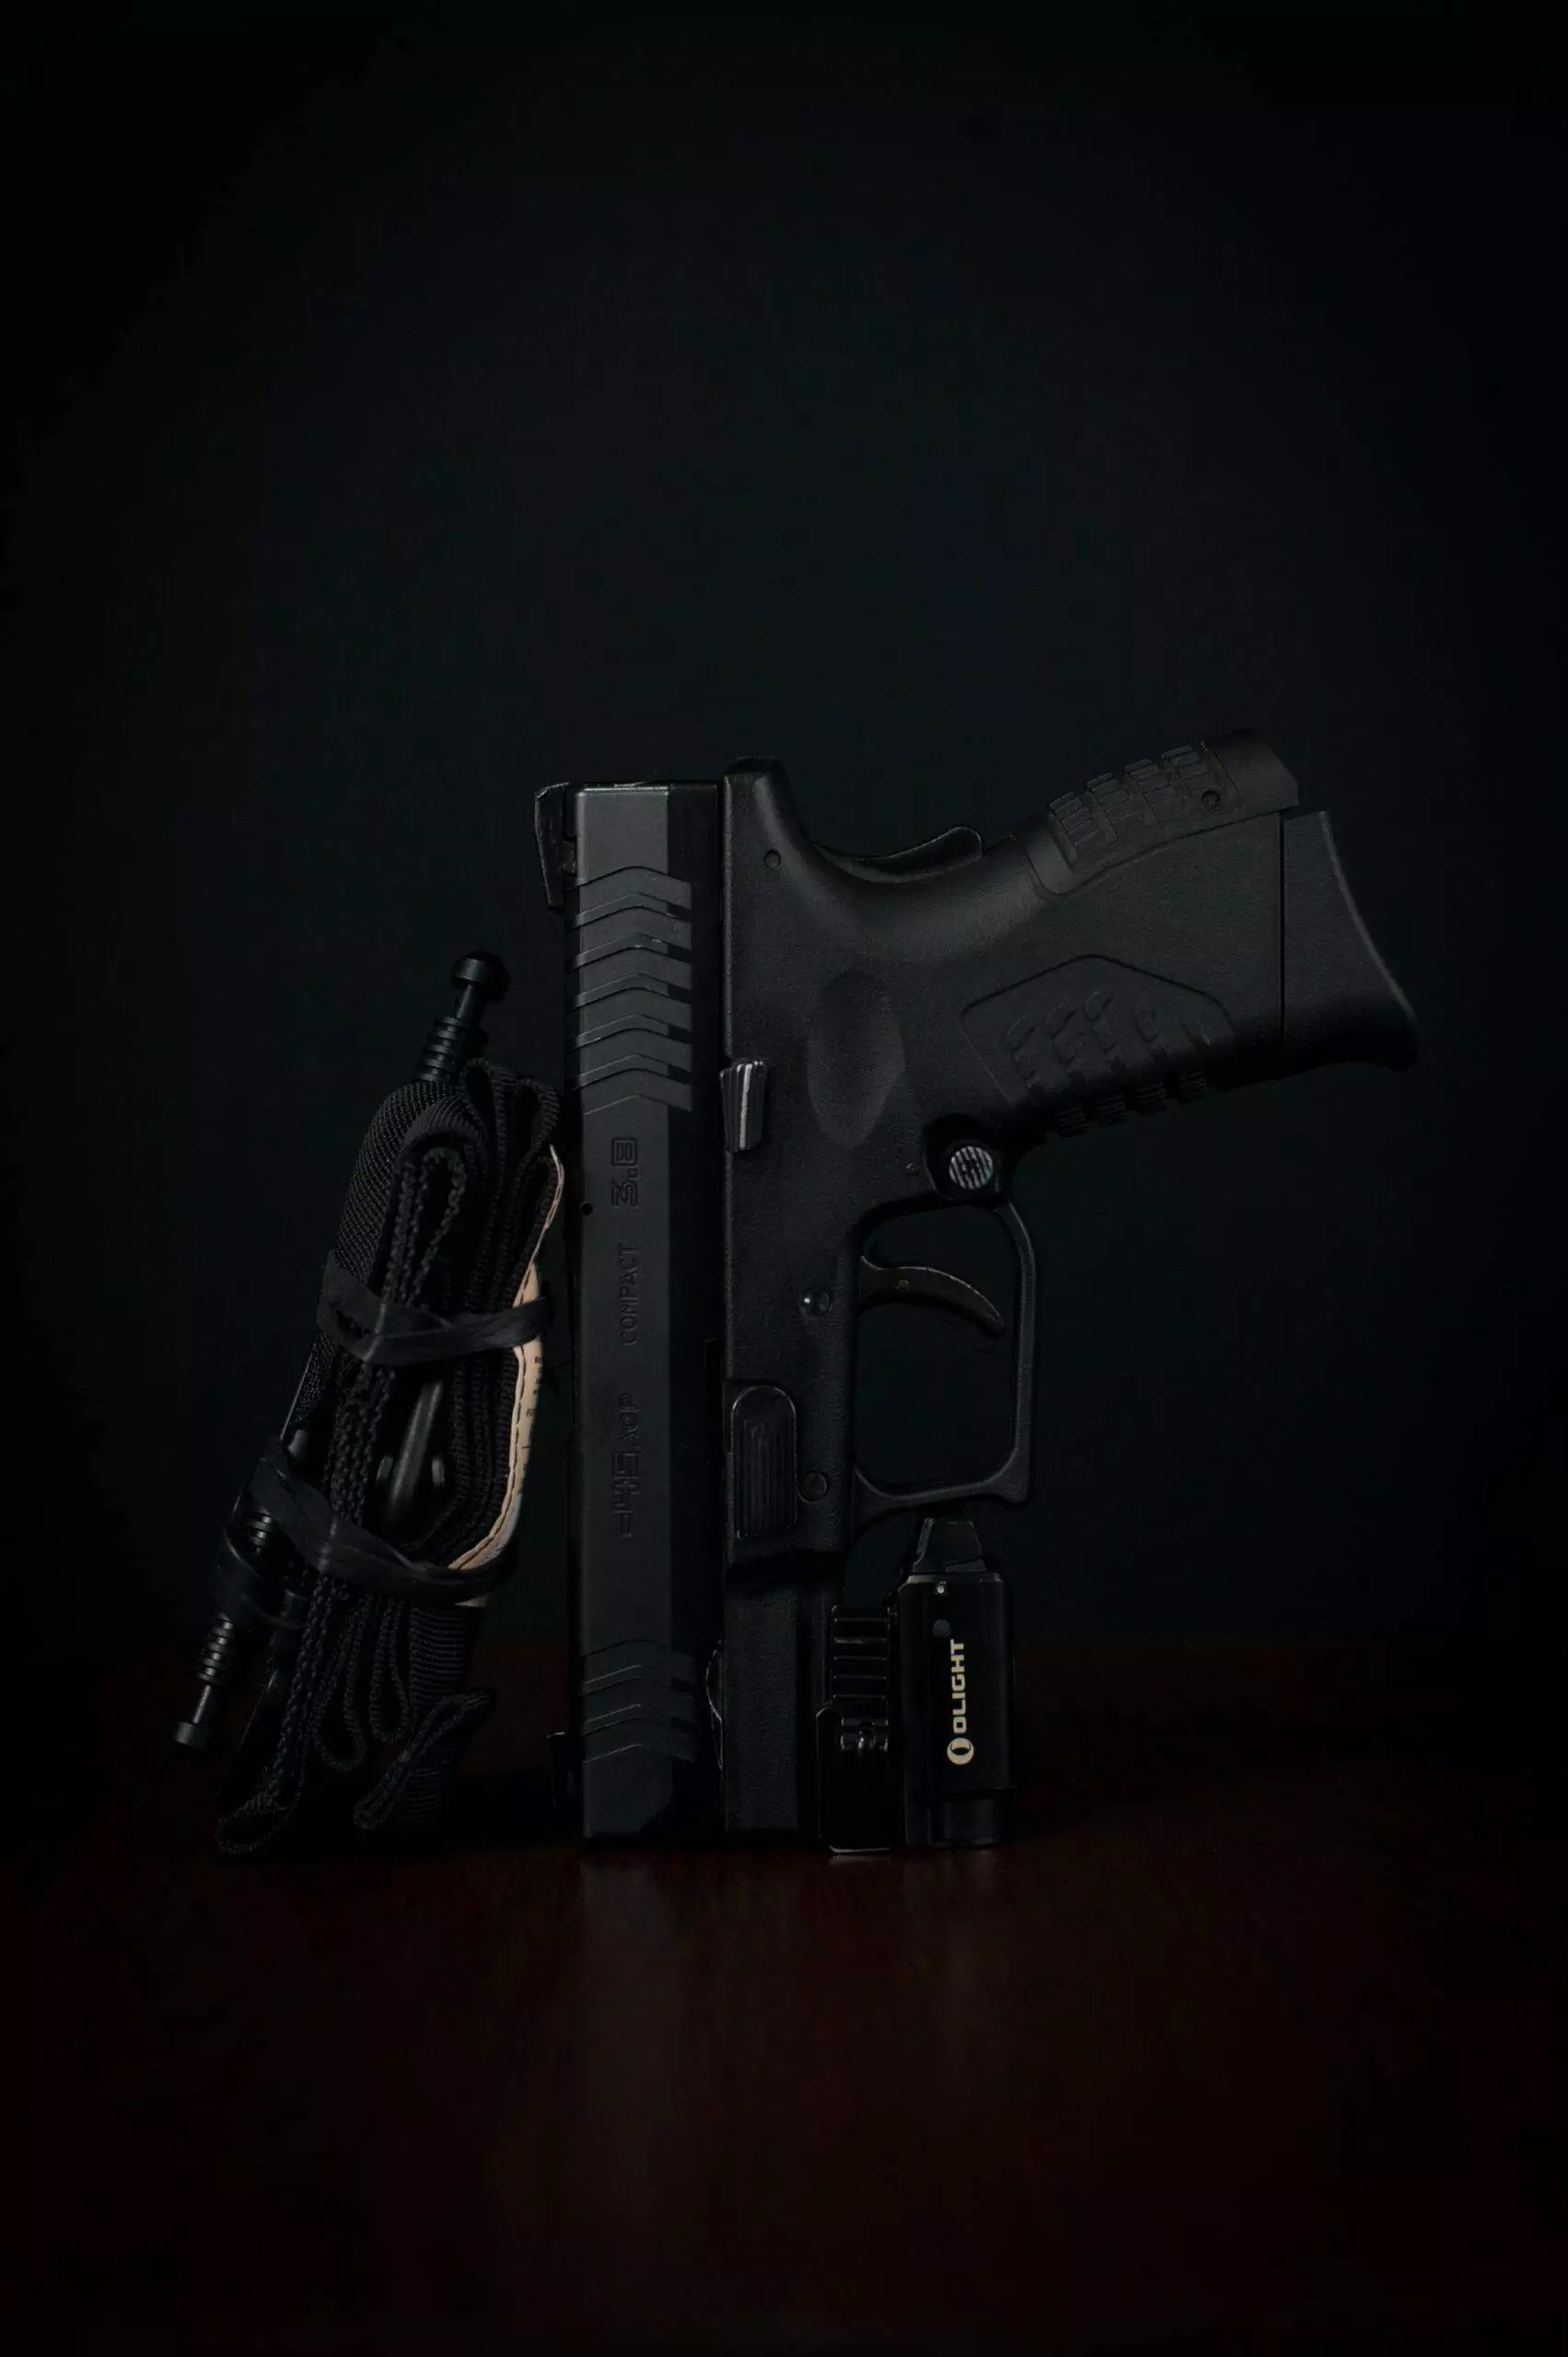 A black semi-automatic pistol.